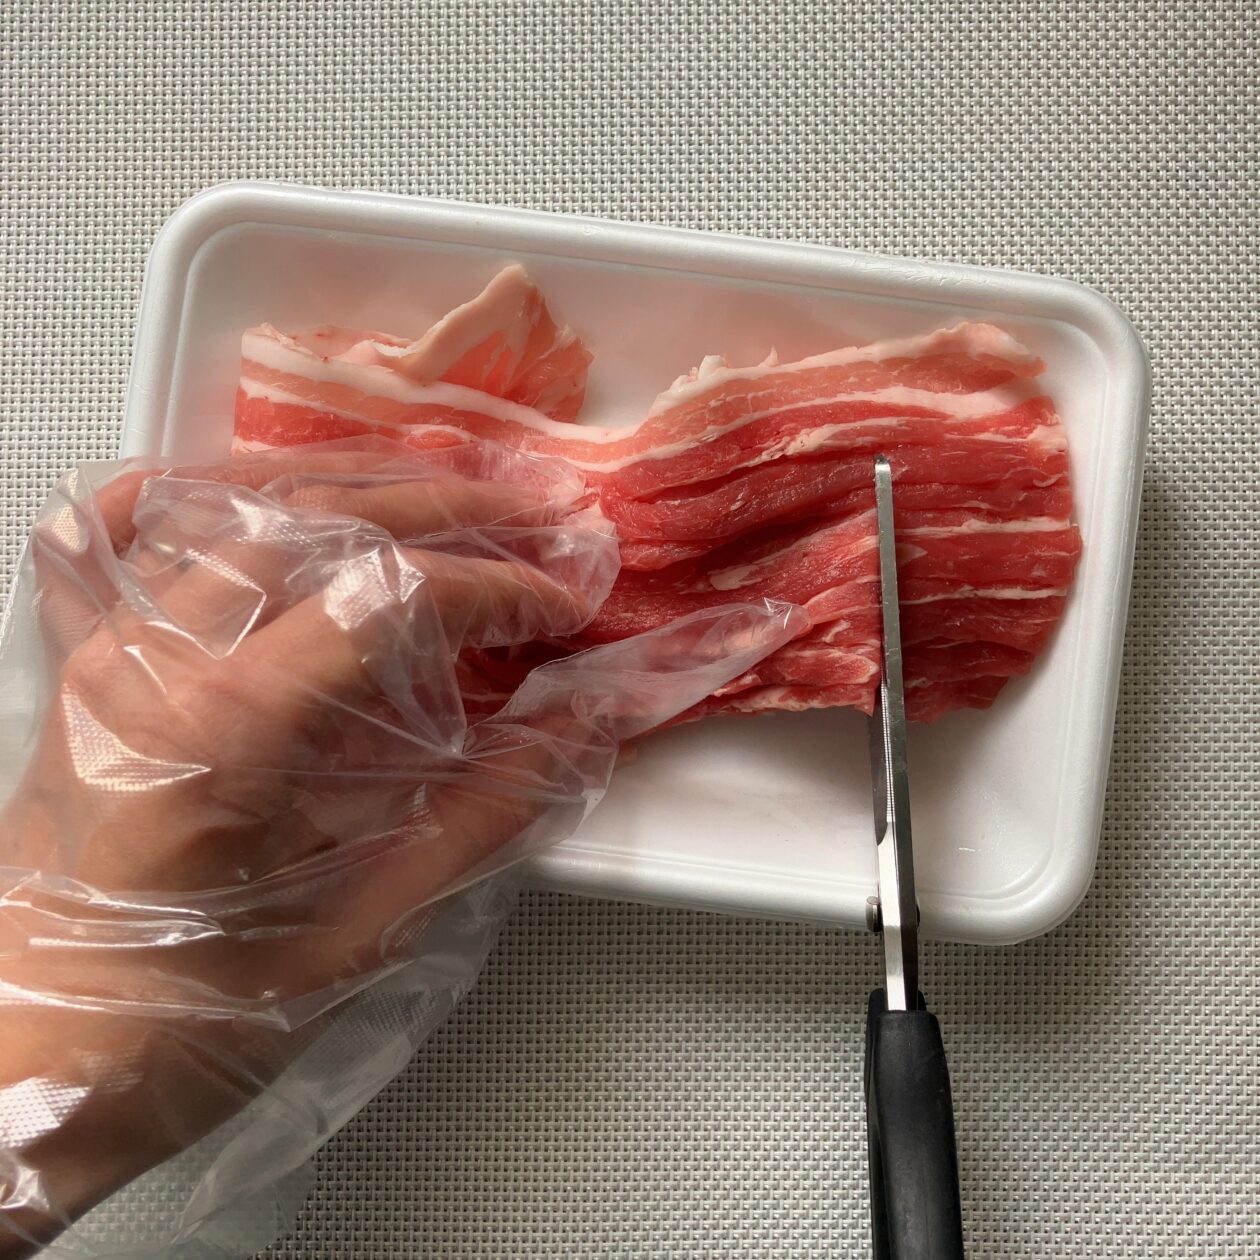 キッチンバサミで肉を切っている写真